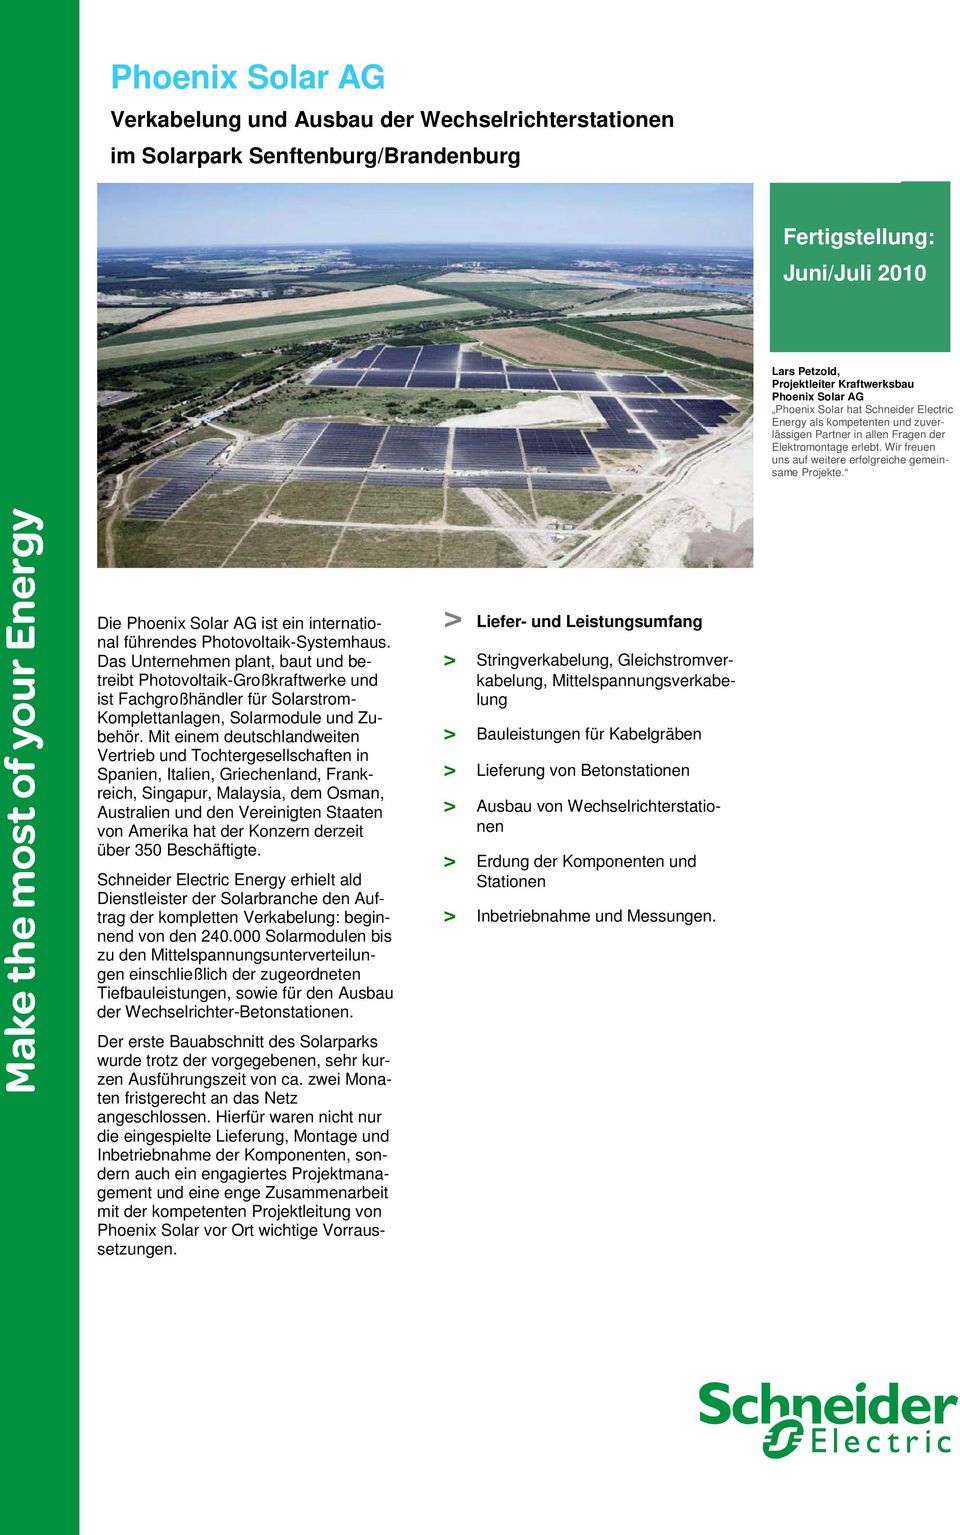 Die Phoenix Solar AG ist ein international führendes Photovoltaik-Systemhaus.